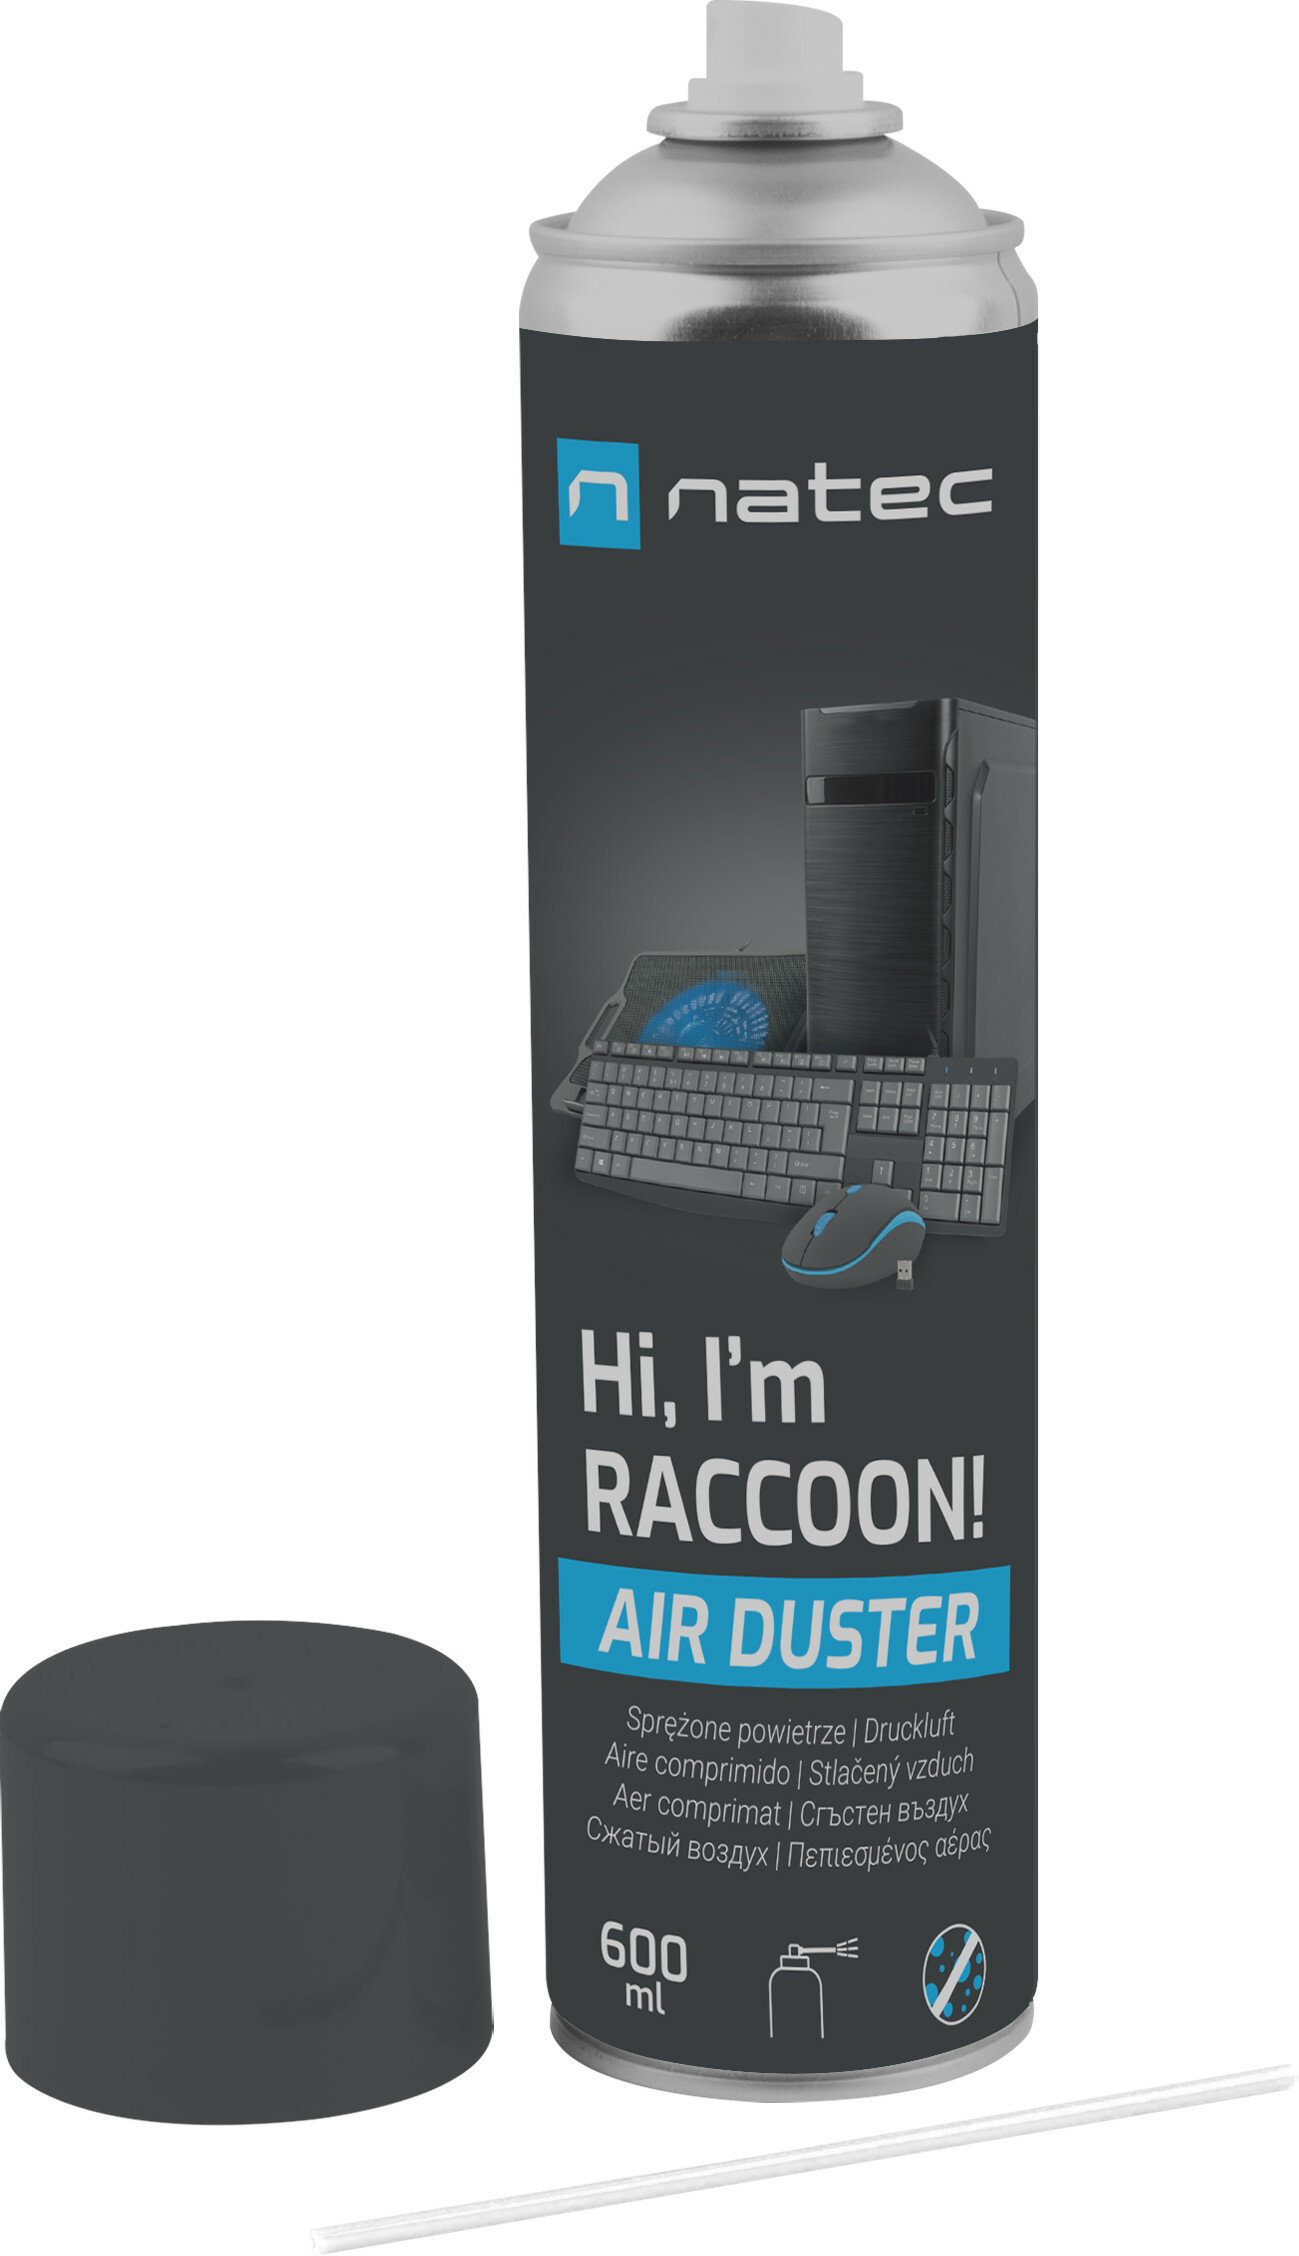 NATEC Raccoon Air 600 ml Sprężone powietrze - niskie ceny i opinie w Media  Expert